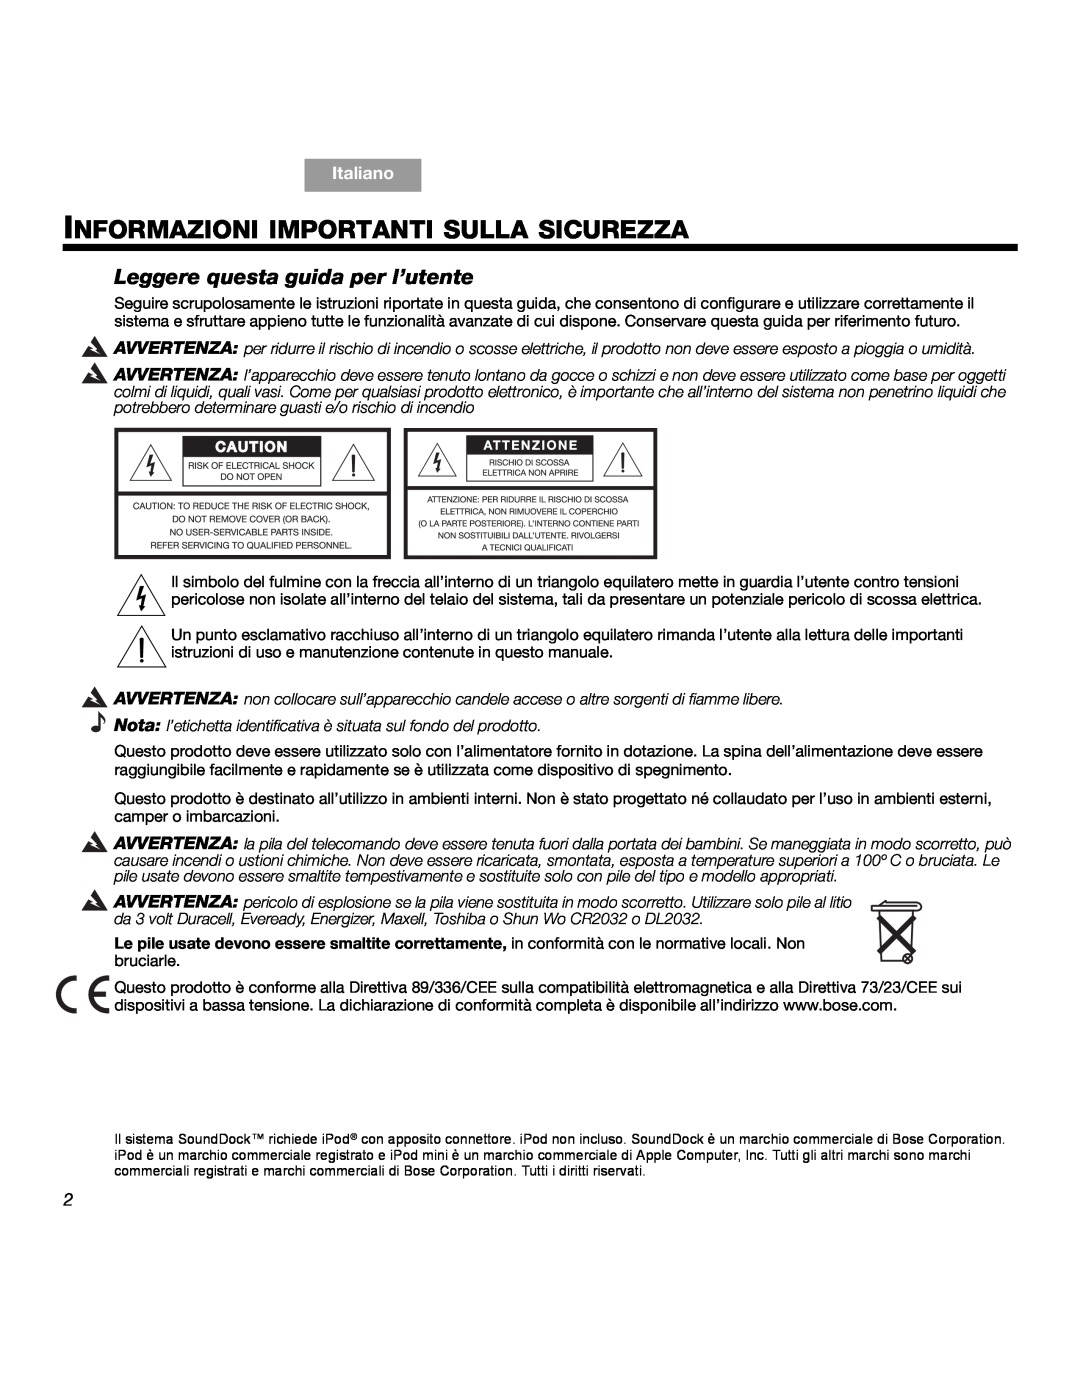 Bose SOUNDDOCKTM manual Informazioni Importanti Sulla Sicurezza, Leggere questa guida per l’utente, Italiano 